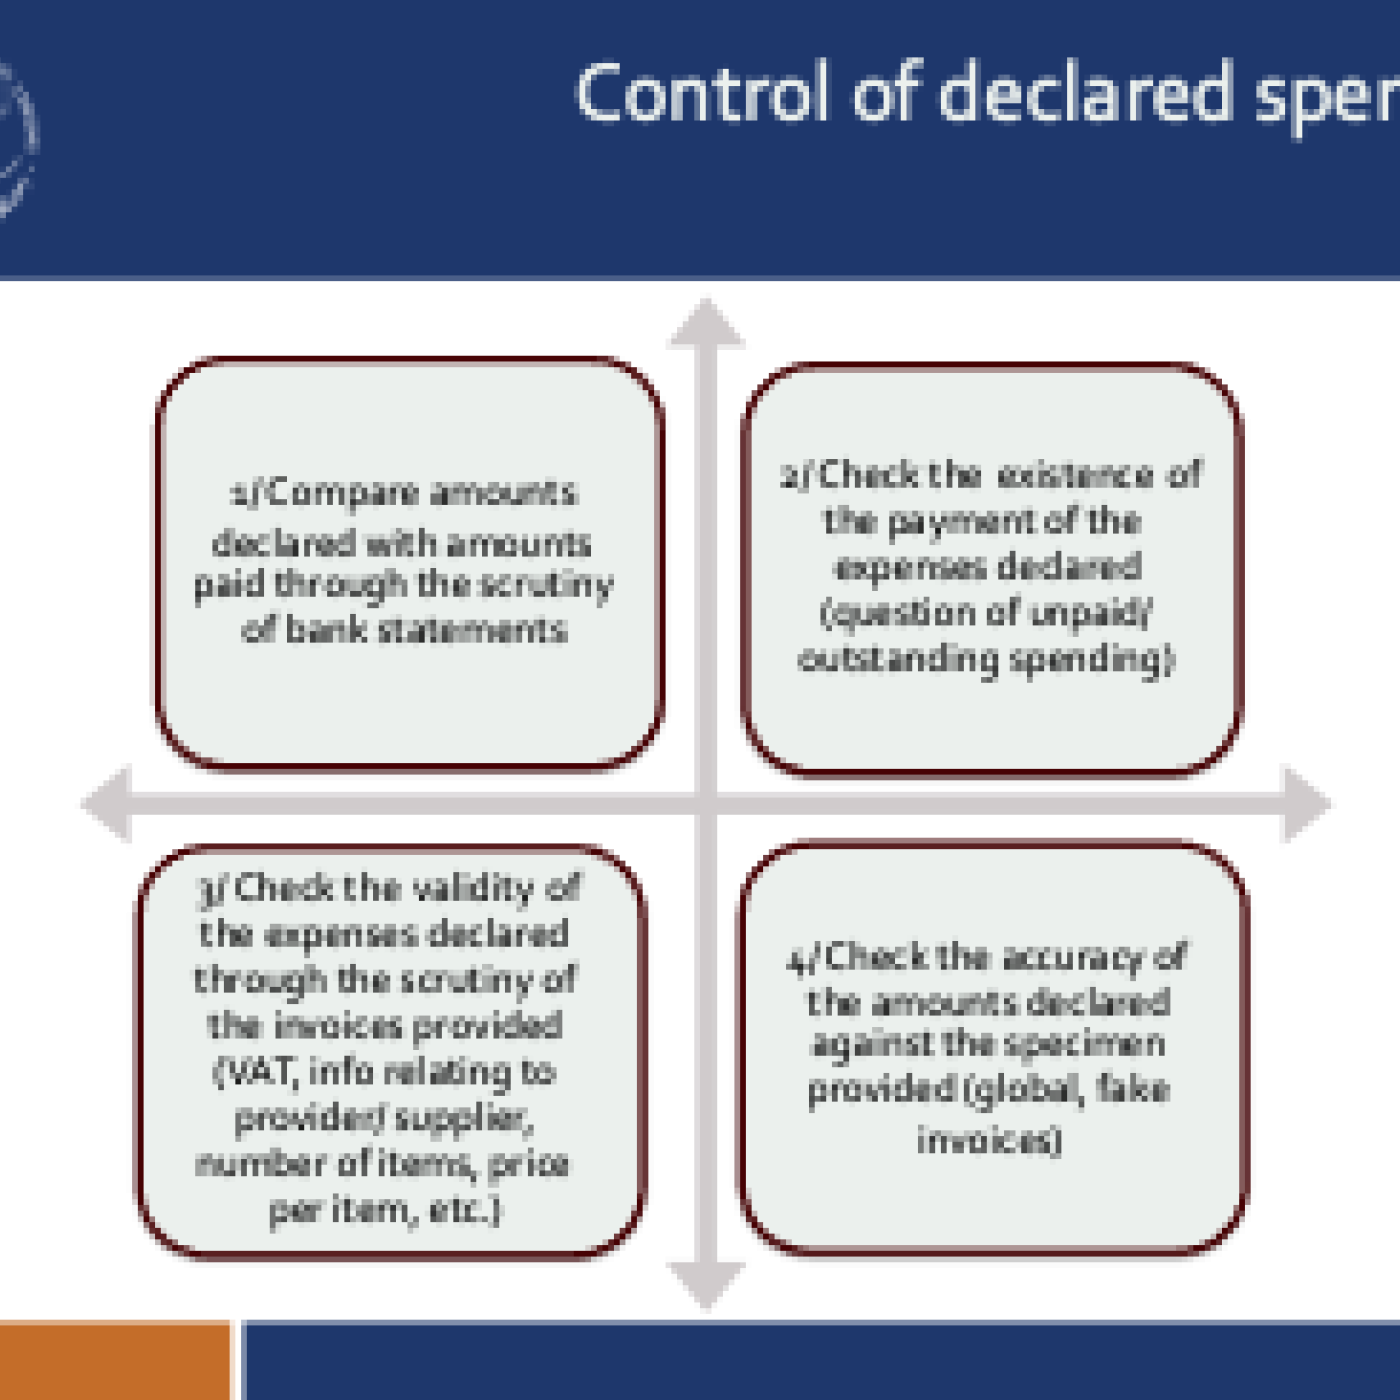 Control of declared spending